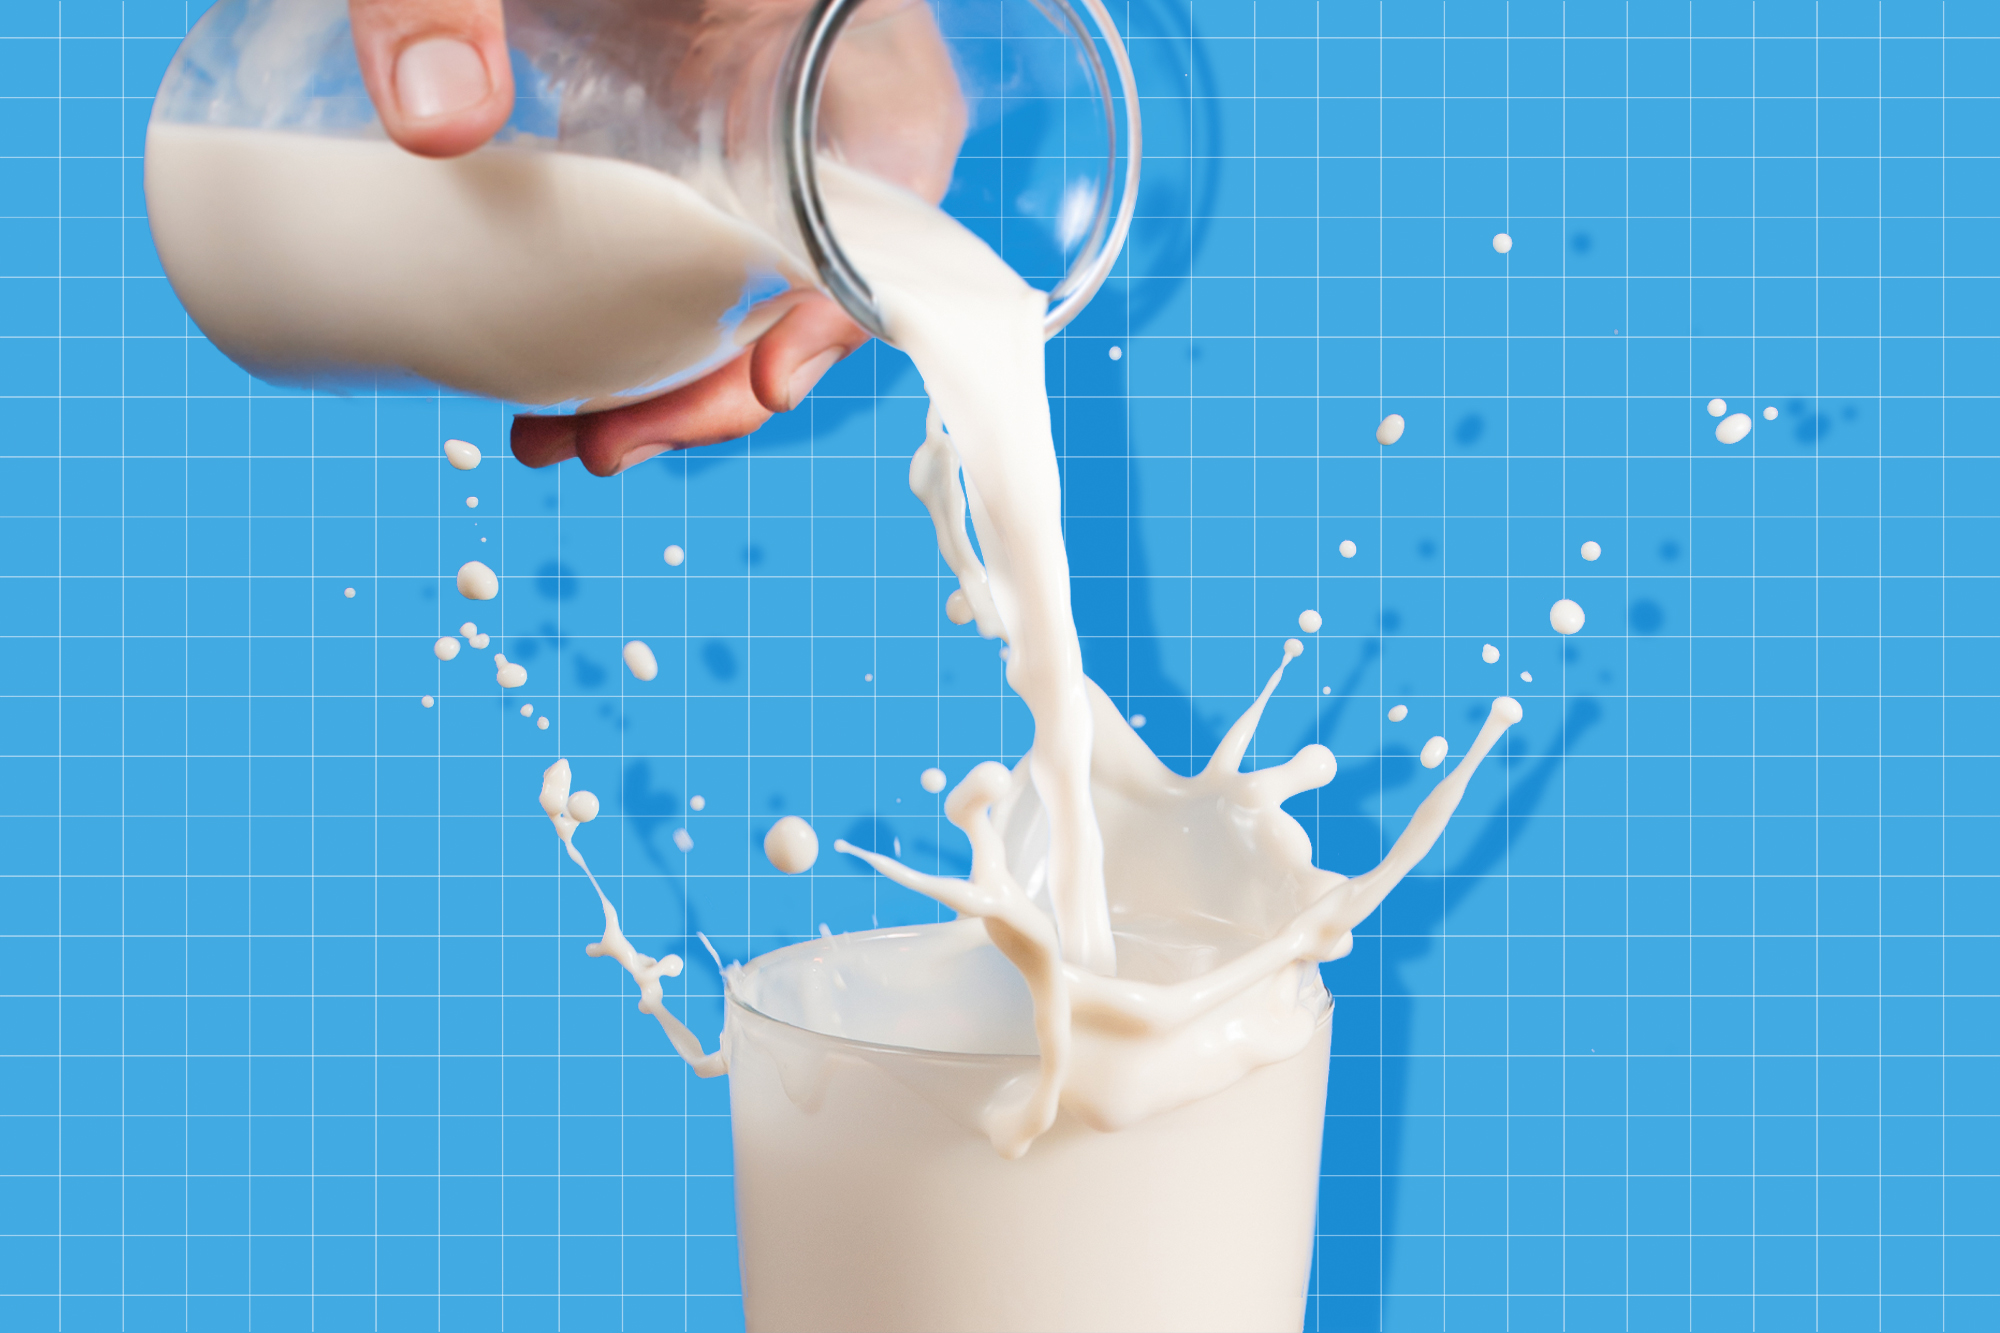 आयुर्वेद के अनुसार भूलकर भी न करें दूध के साथ इन 5 चीजों का सेवन